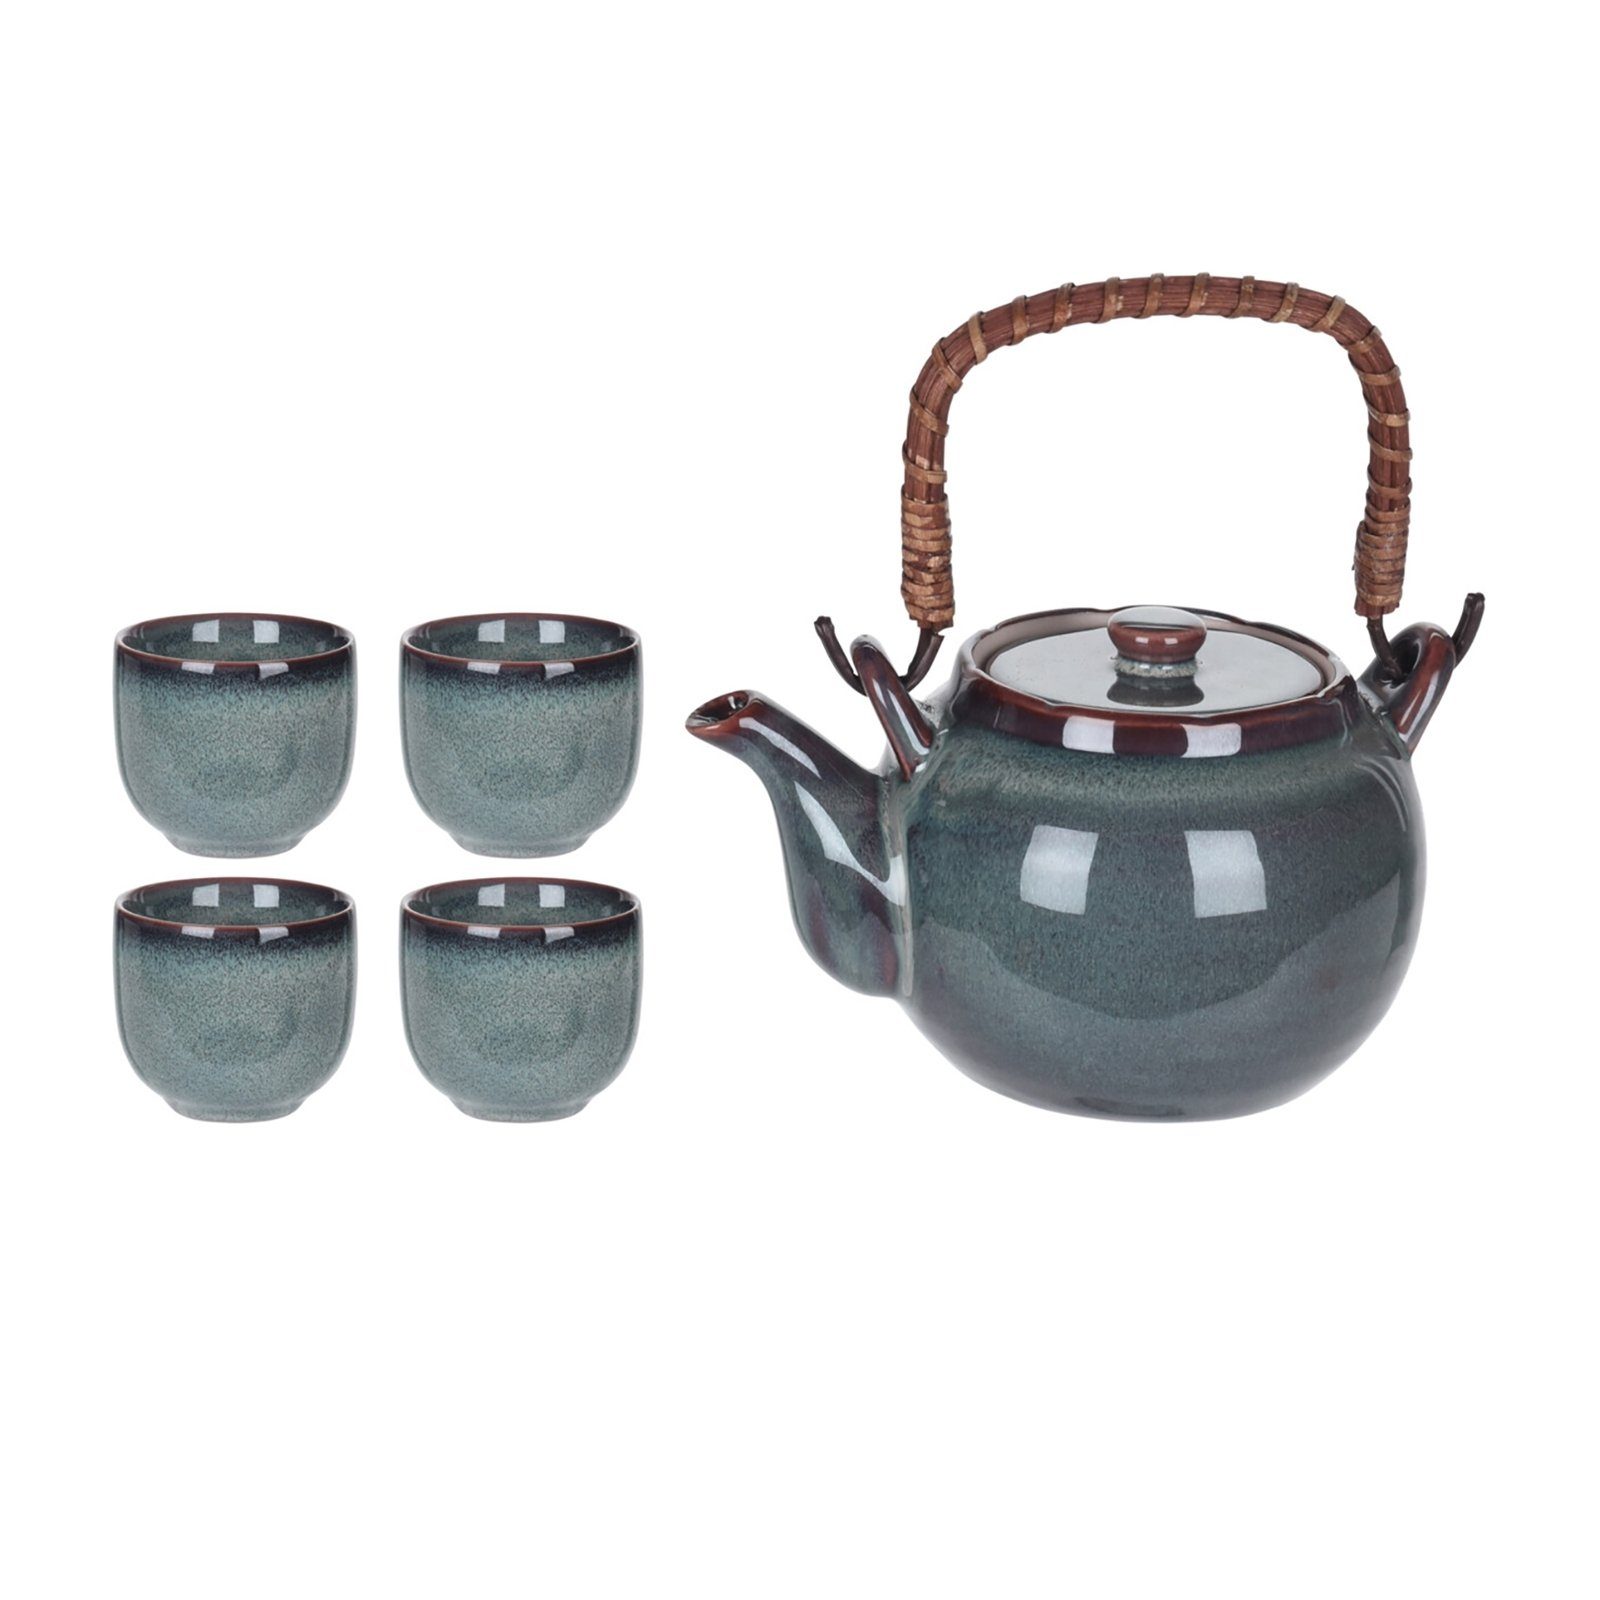 Neuetischkultur Teekanne Teekanne mit Keramik 4 Becher